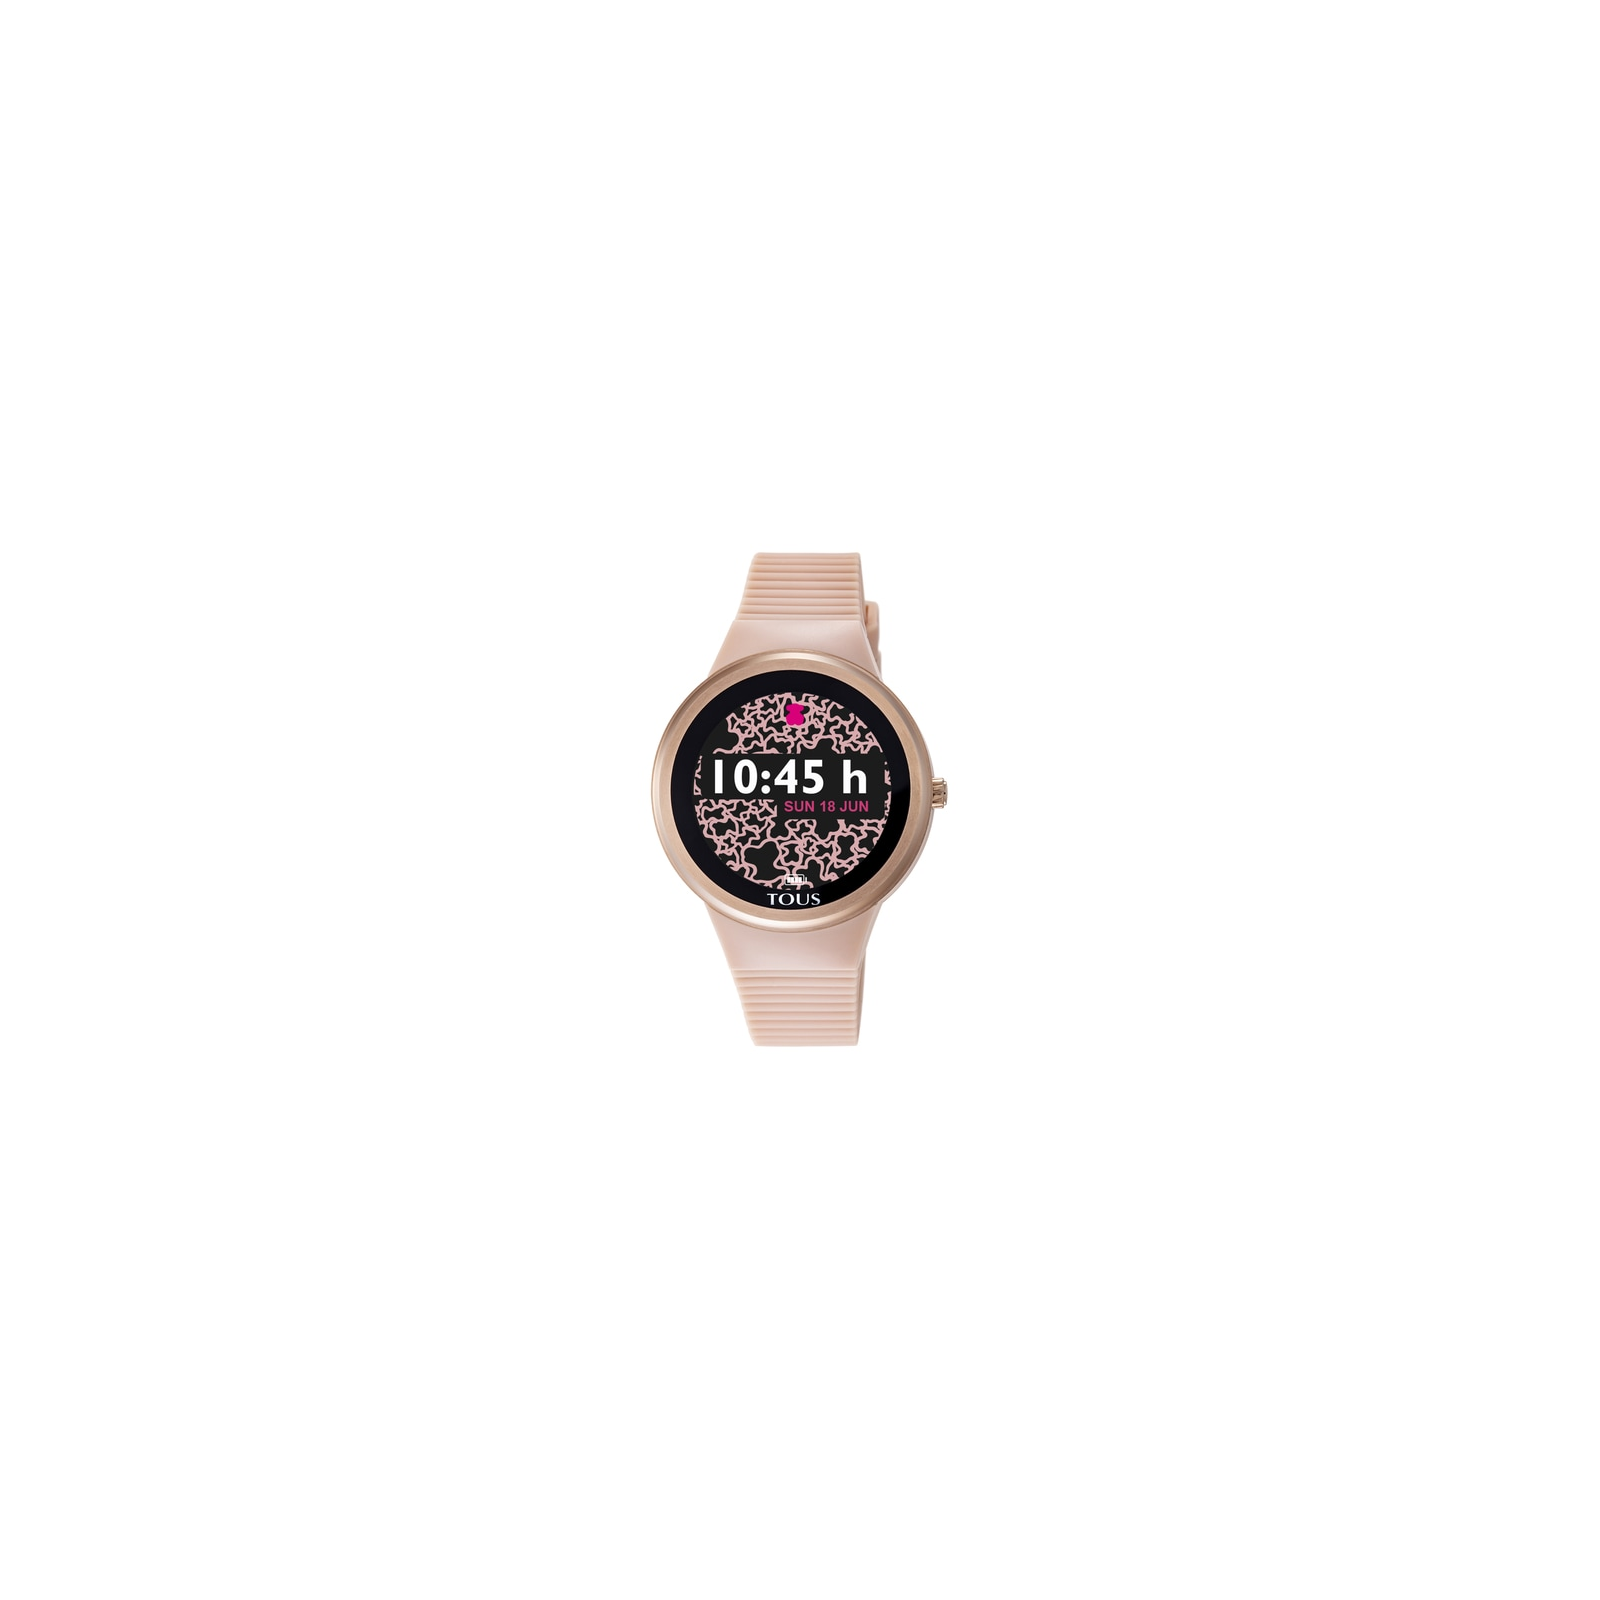 Reloj smartwatch activity Rond Touch de acero IP rosado